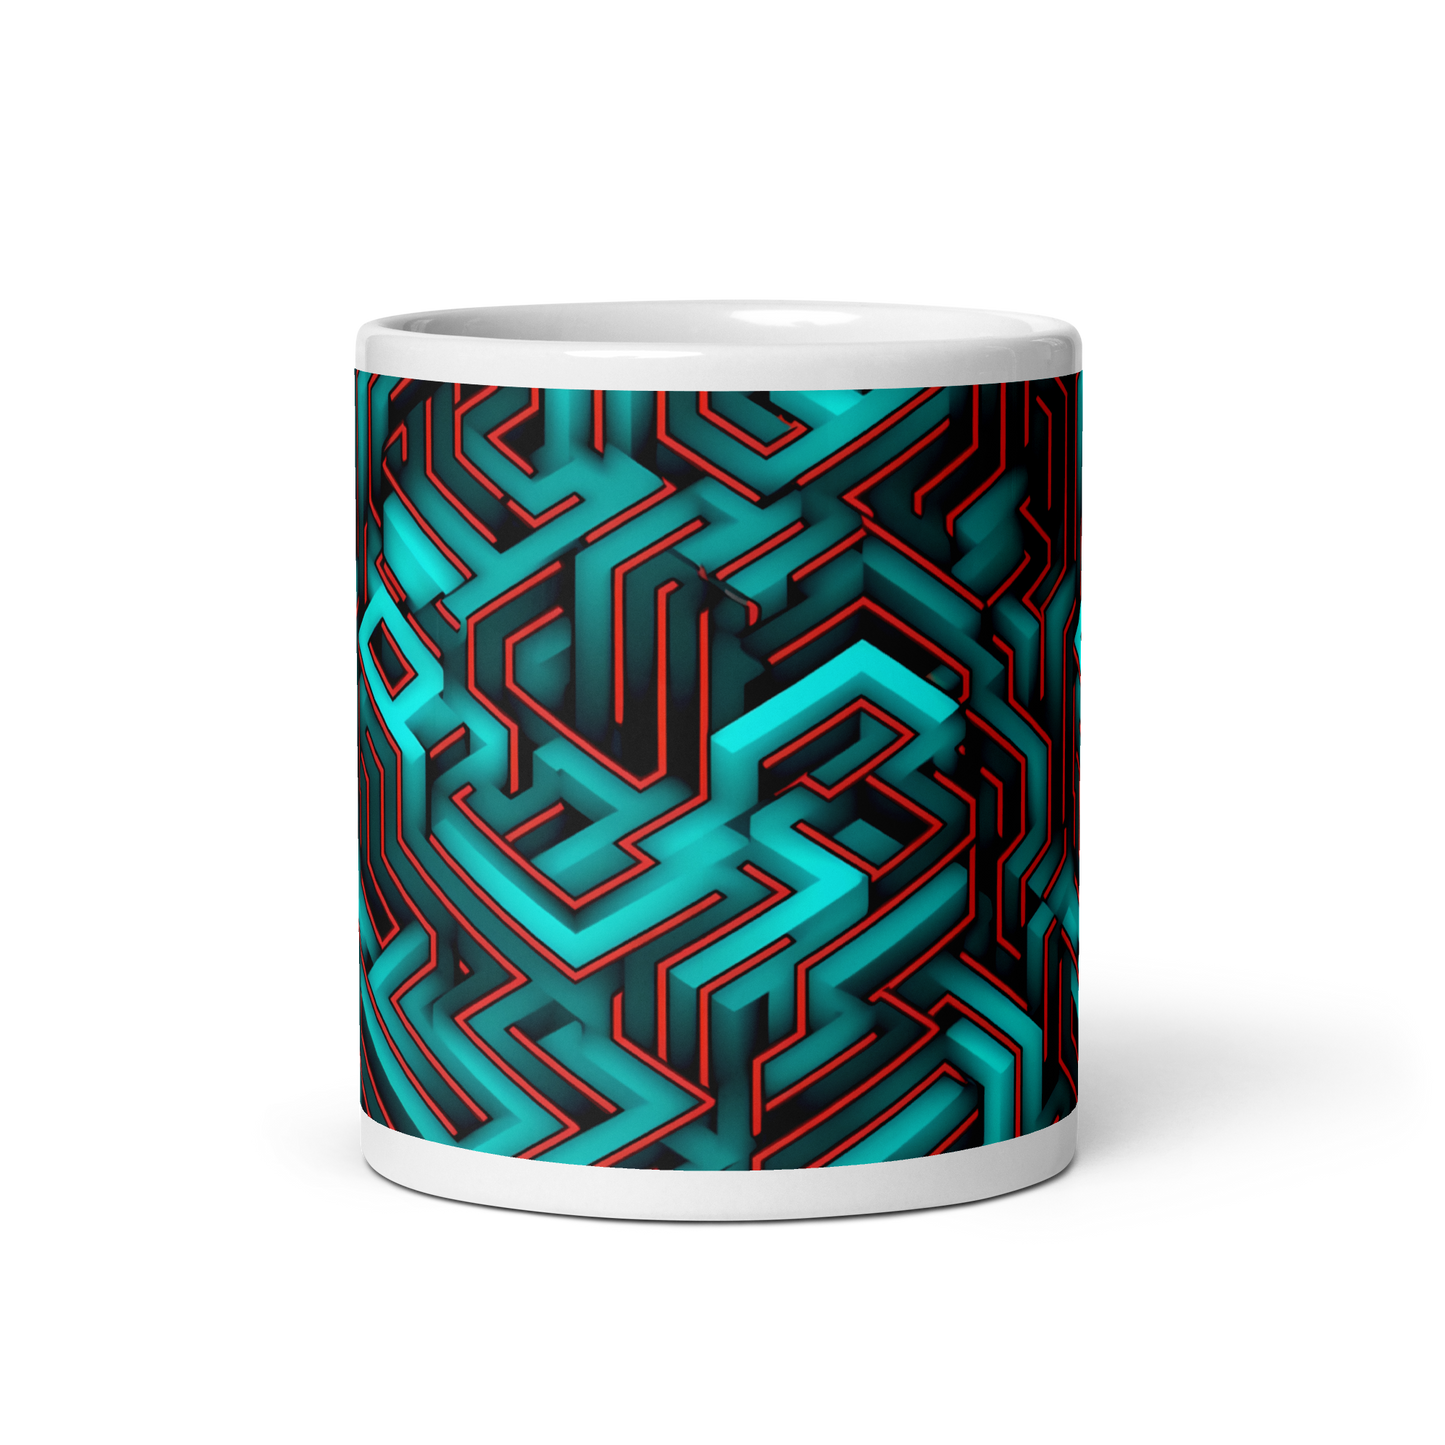 3D Maze Illusion | 3D Patterns | White Glossy Mug - #2